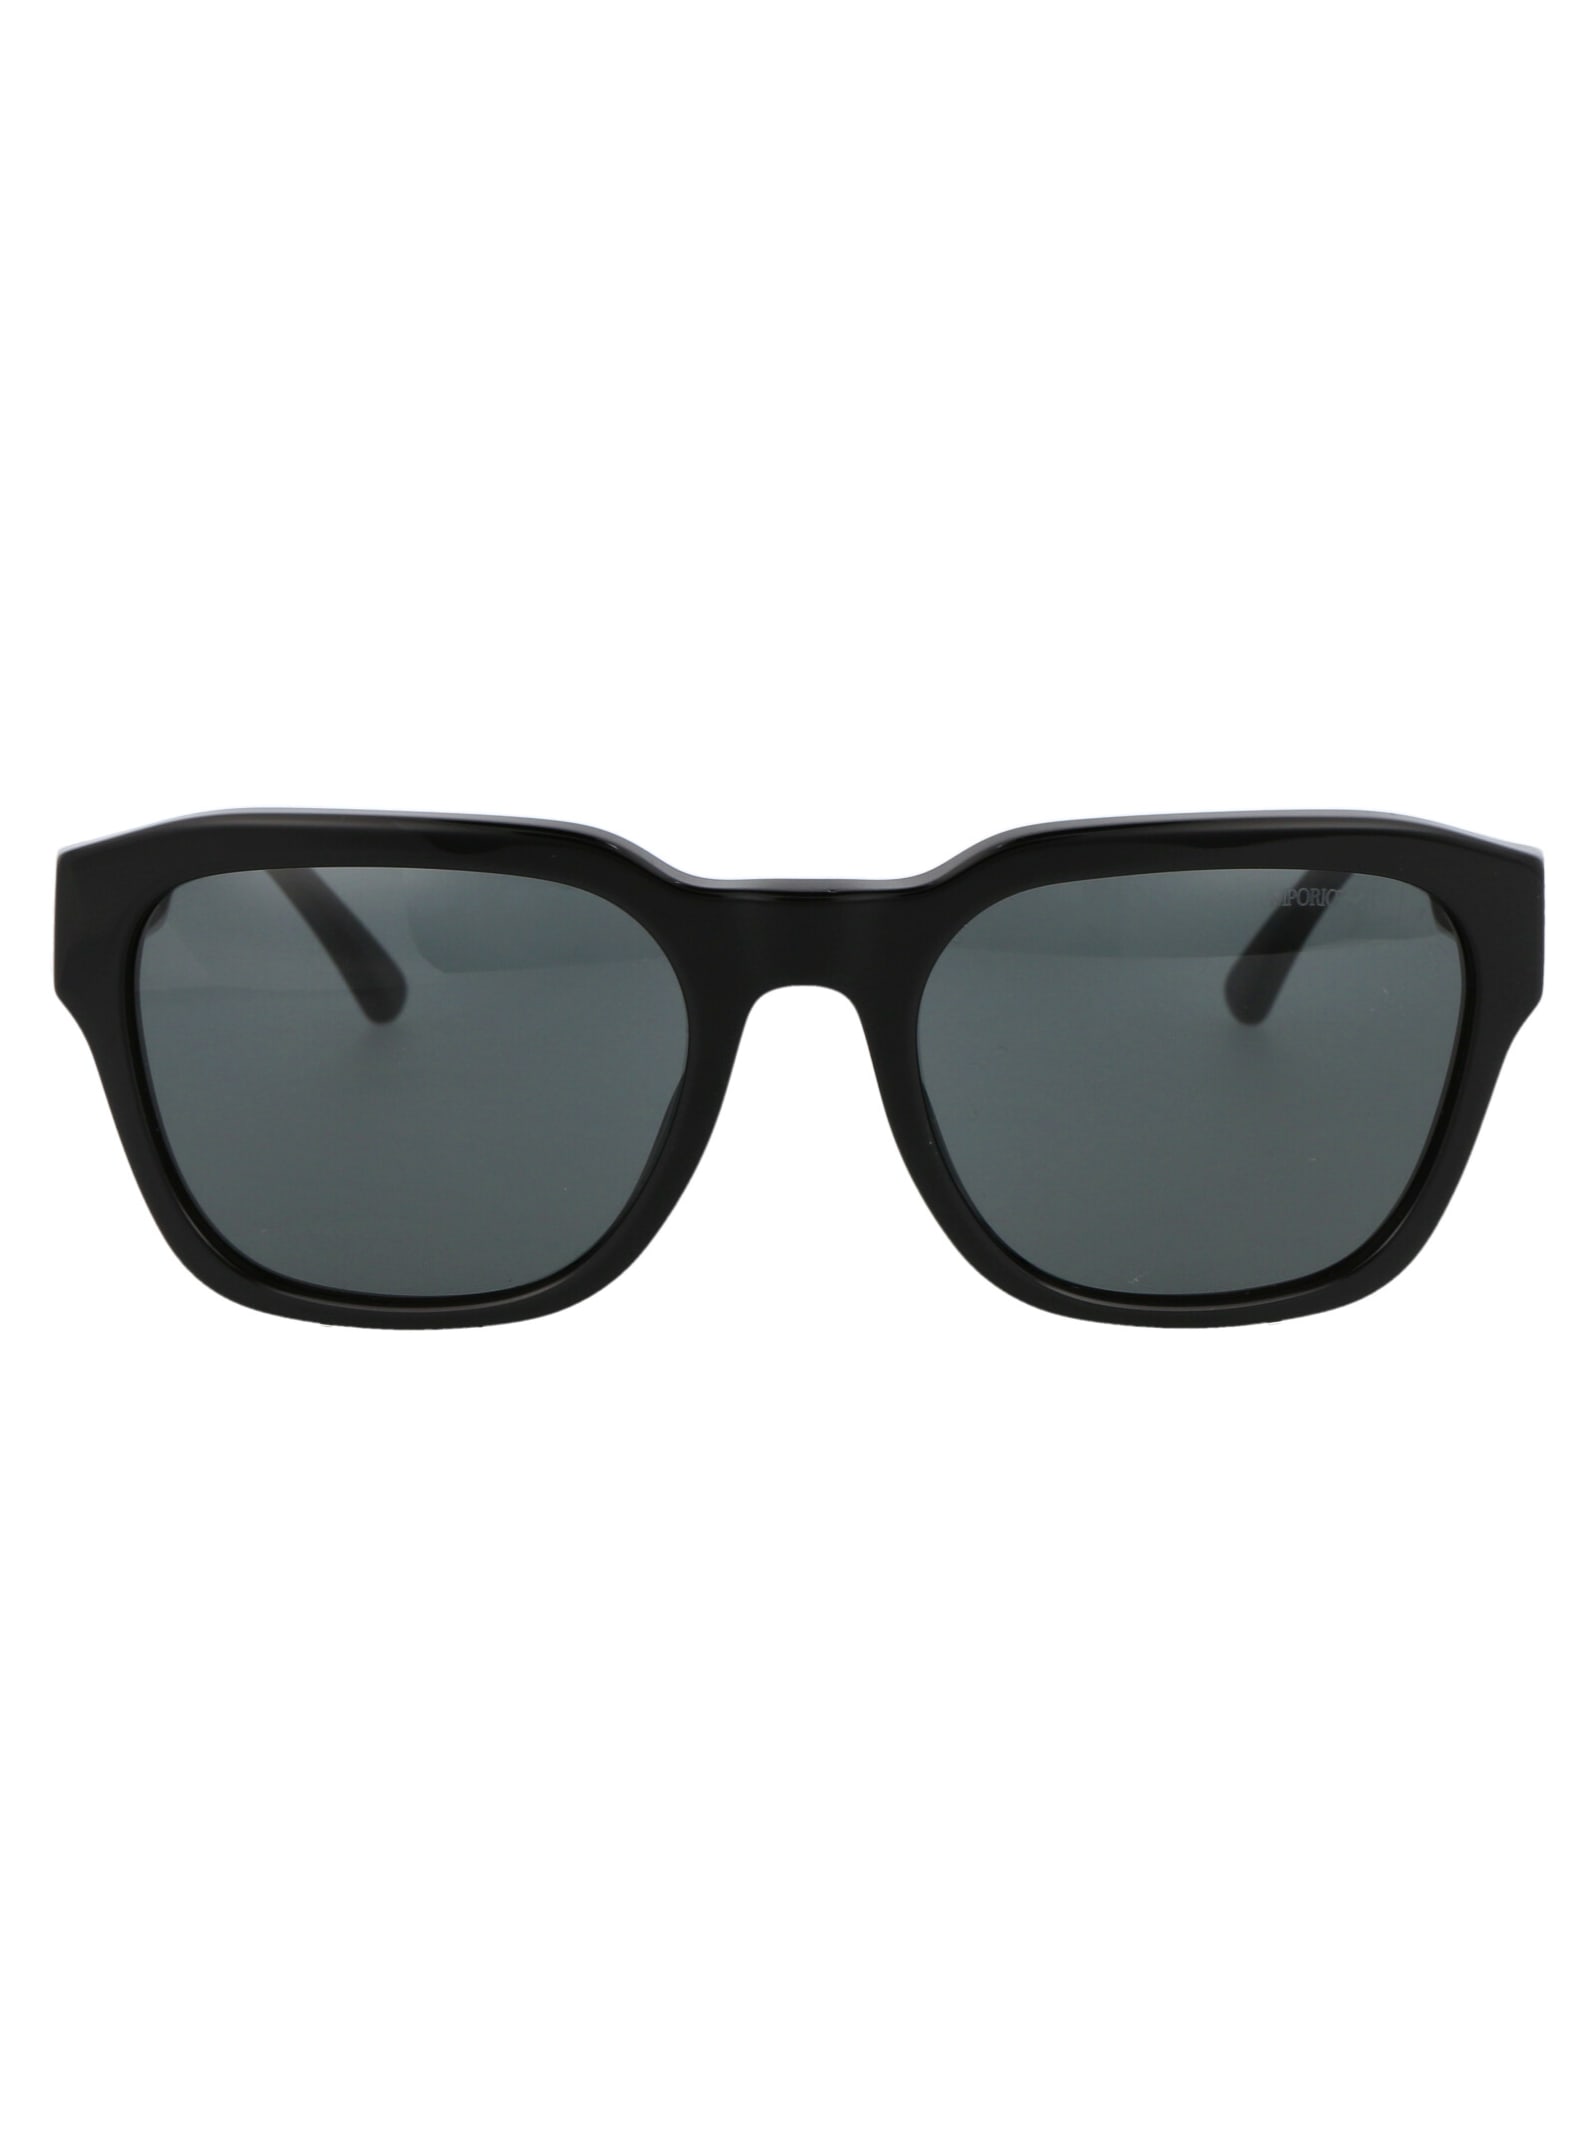 Emporio Armani 0ea4175 Sunglasses